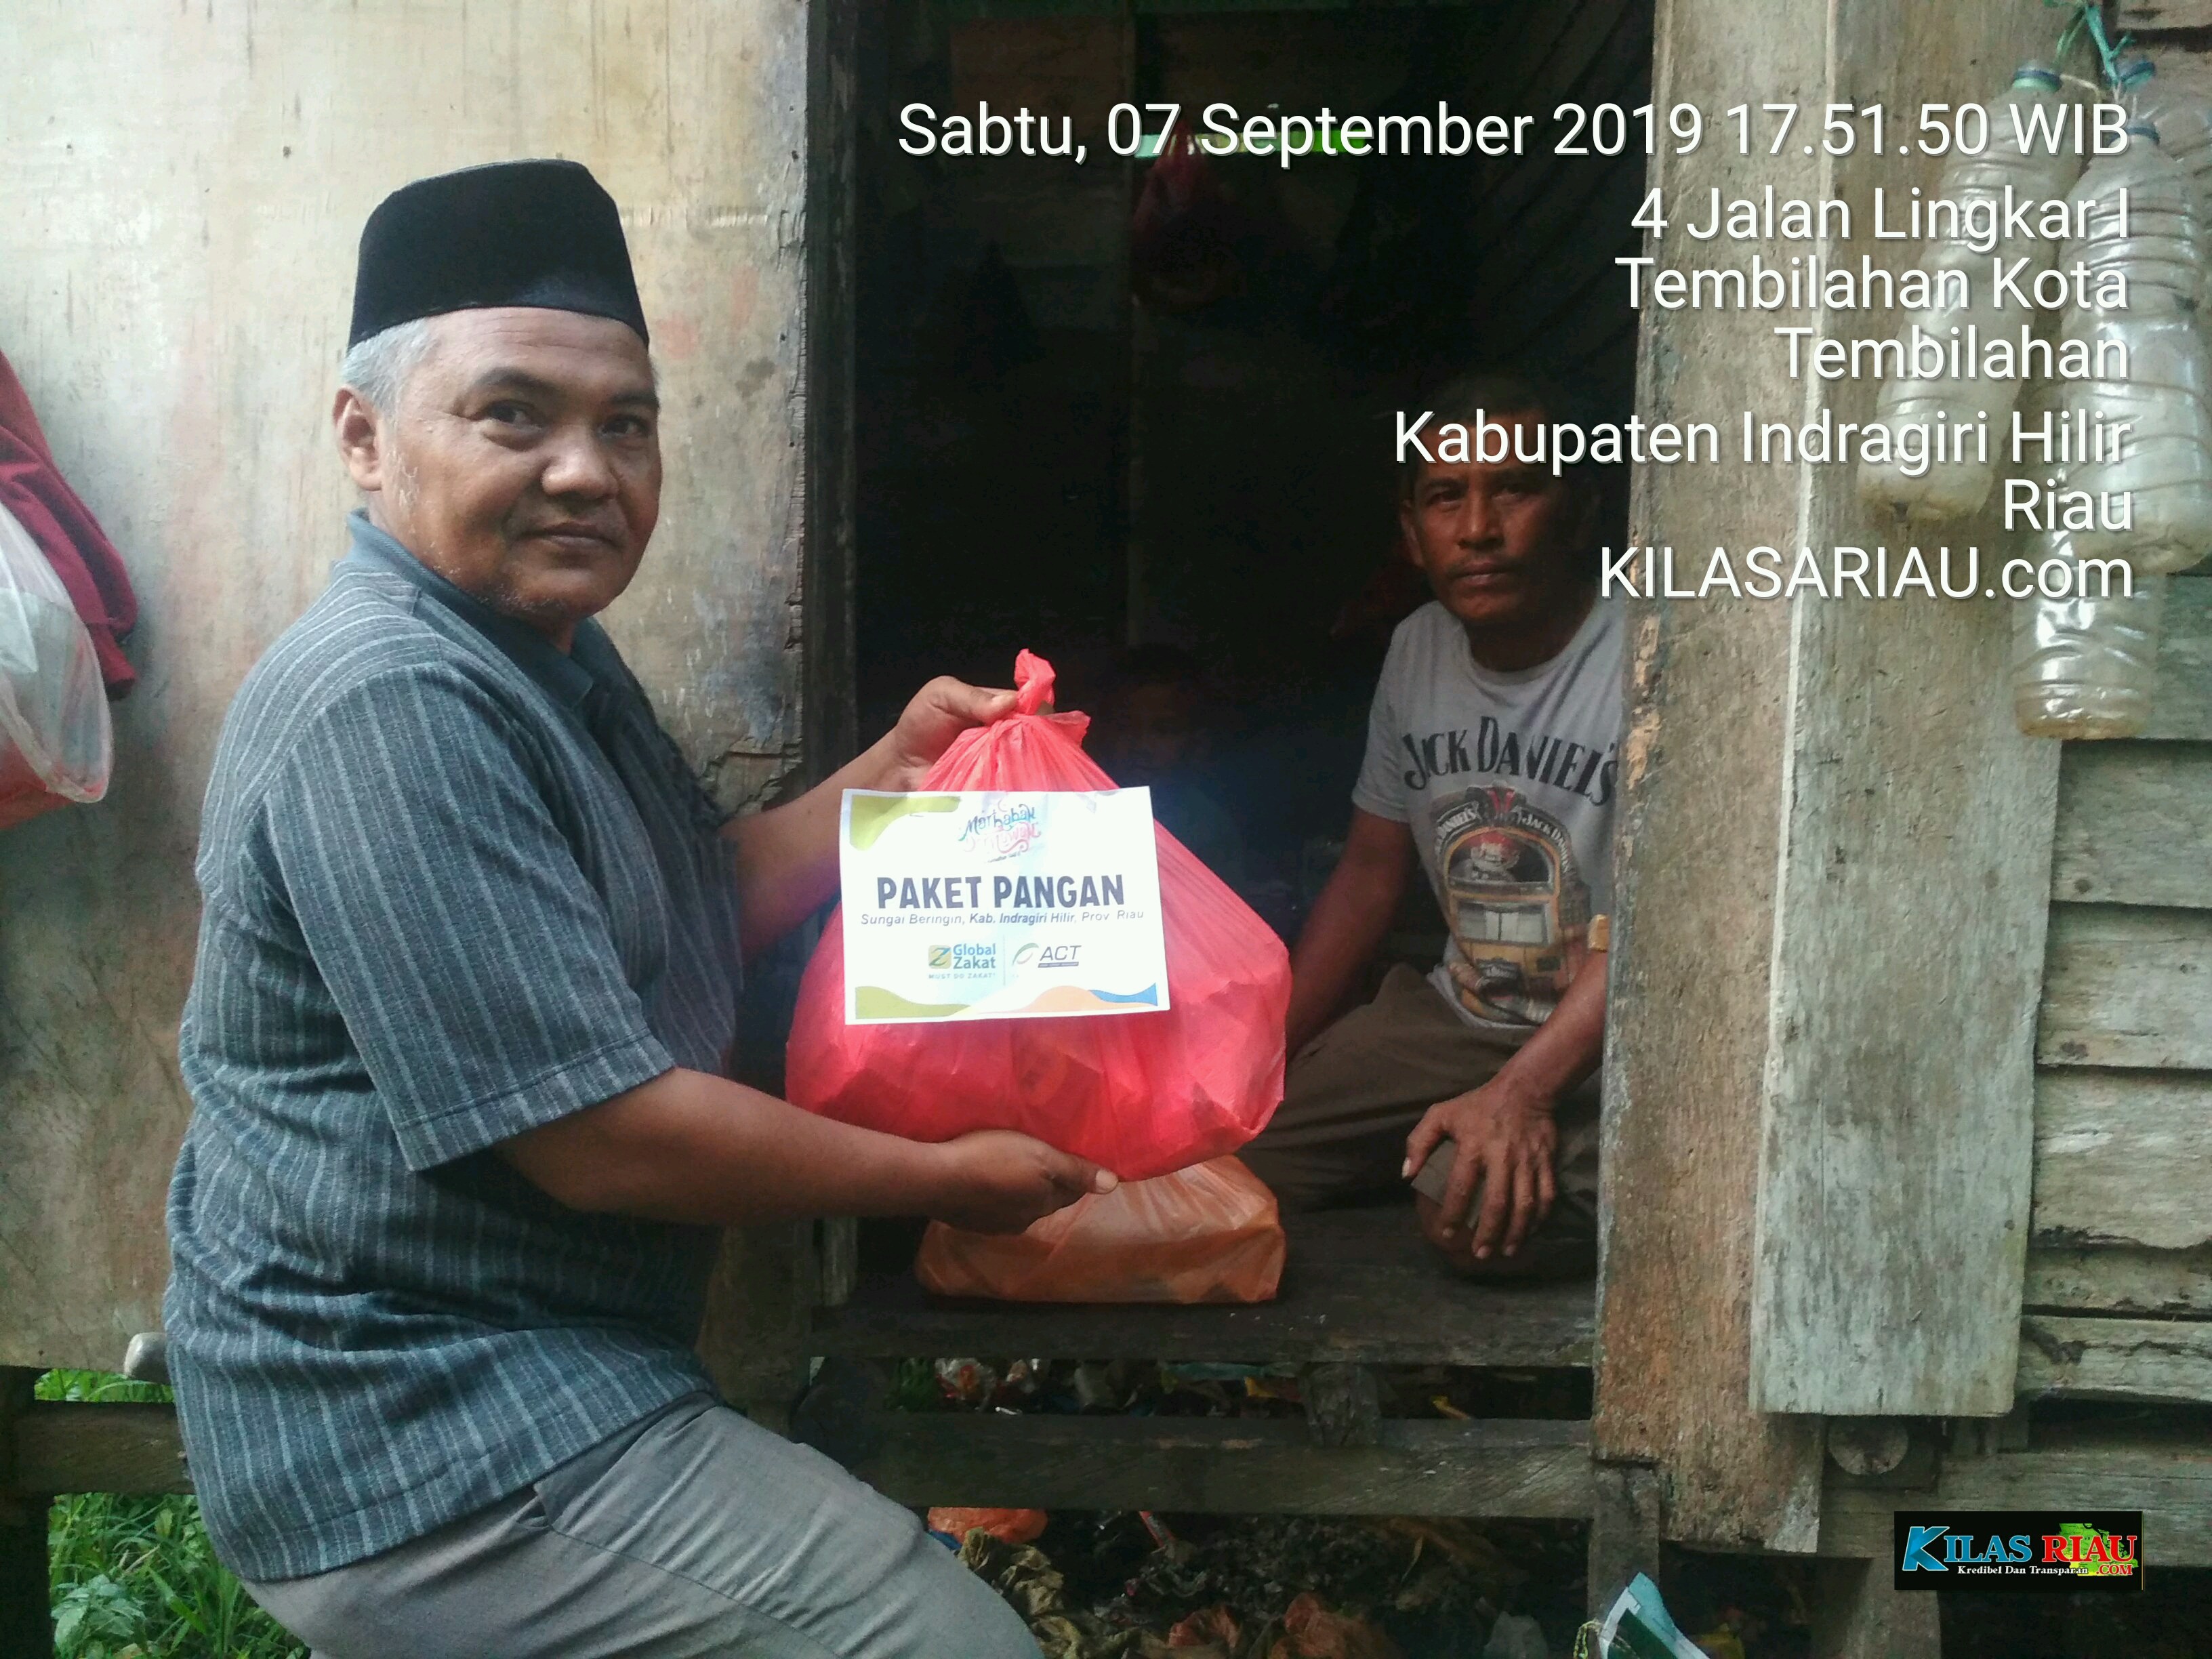 ACT Riau Bekerja Berbagi sembako Bekerja sama Pejuang Subuh dan Jum'at Berbagai